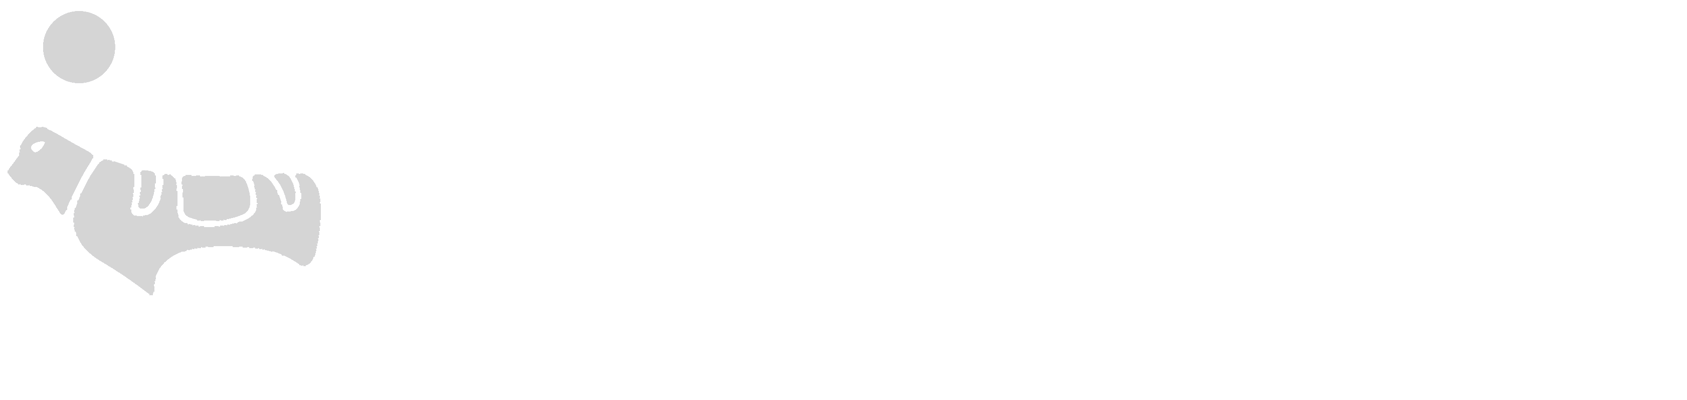 novo-nordisk-logo-white-1